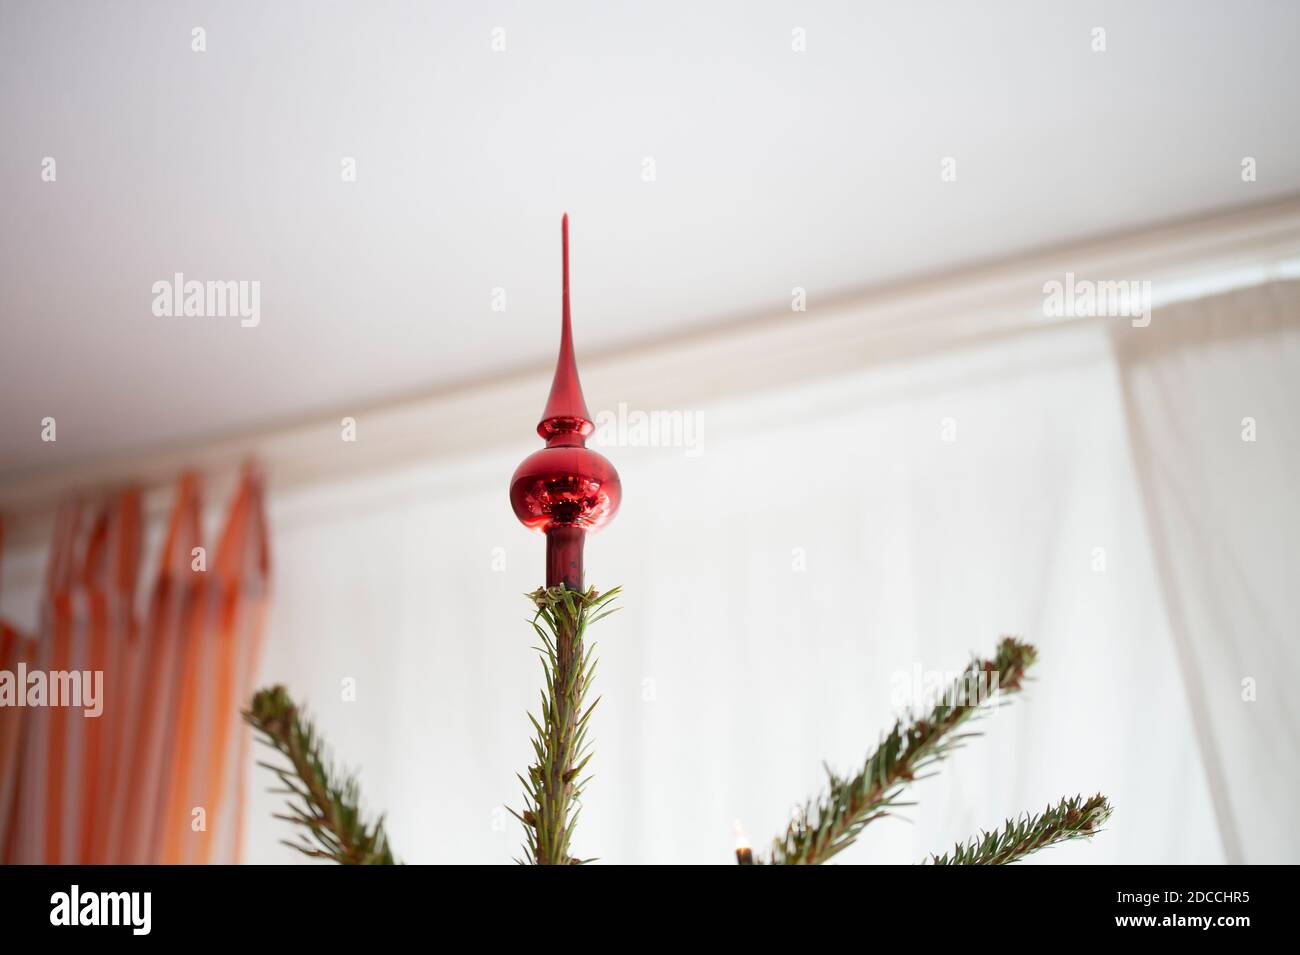 Albero di Natale decorato, vero abete Nordmann di fronte alla camera offuscata con tende arancioni. Un albero rosso decorativo e molto spazio vuoto. Insolito Foto Stock